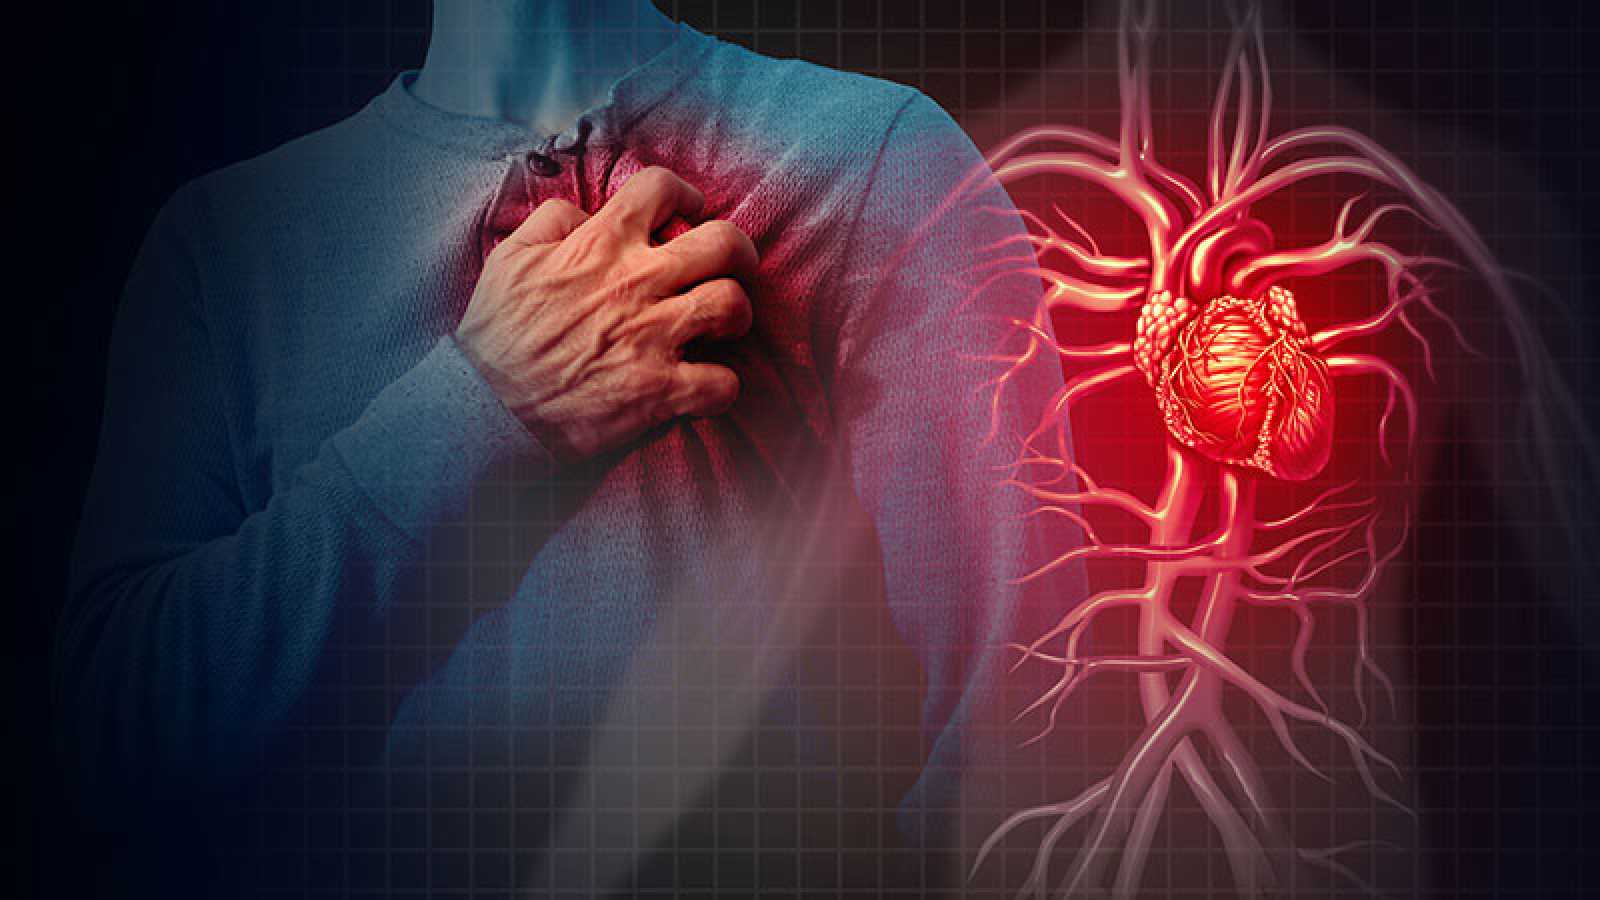 Ανακοπή καρδιάς: Έχει προειδοποιητικά σημάδια;